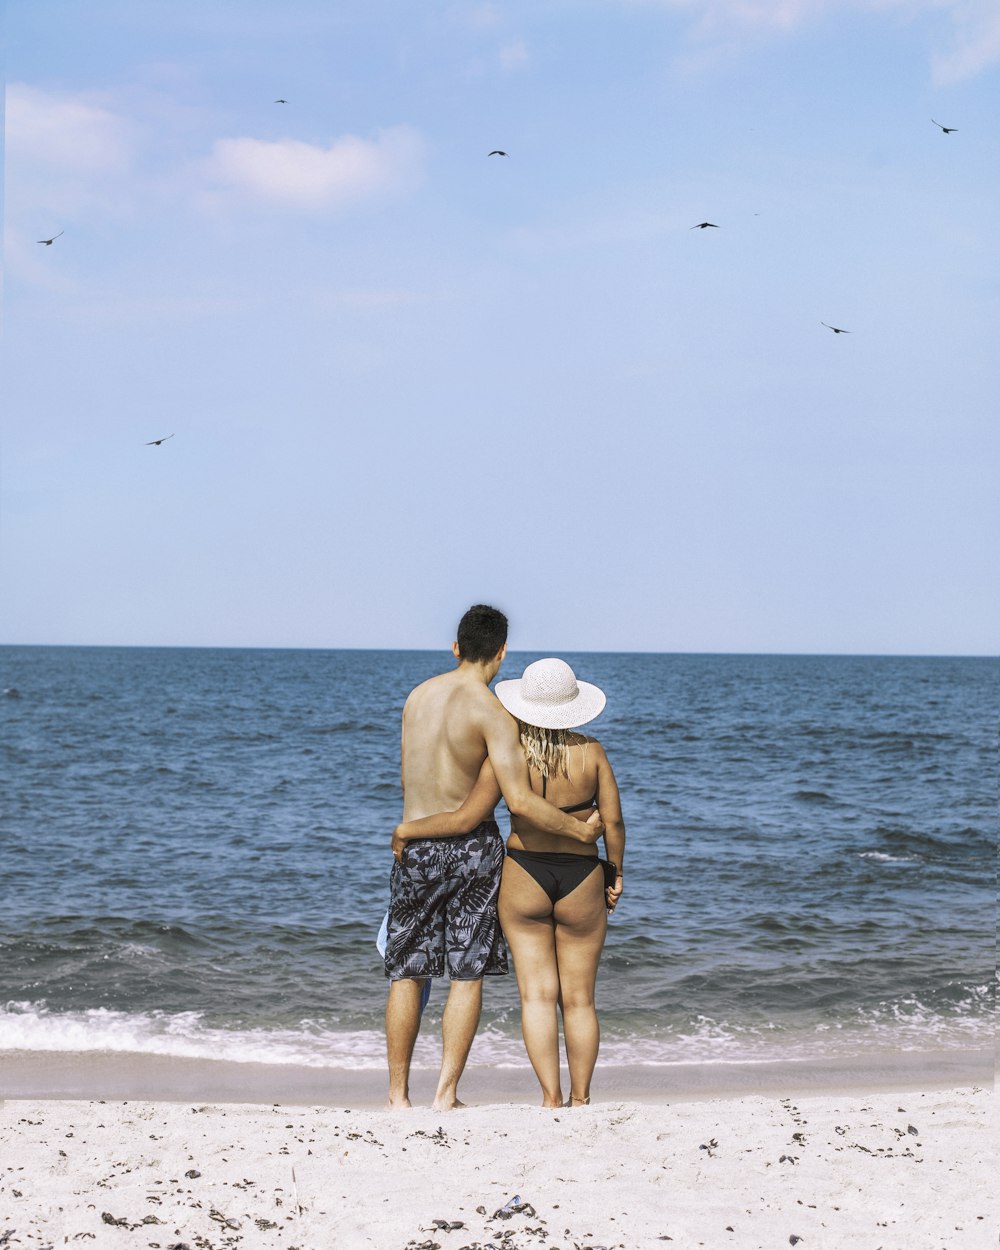 포옹하고 해변에 서 있는 남자와 여자